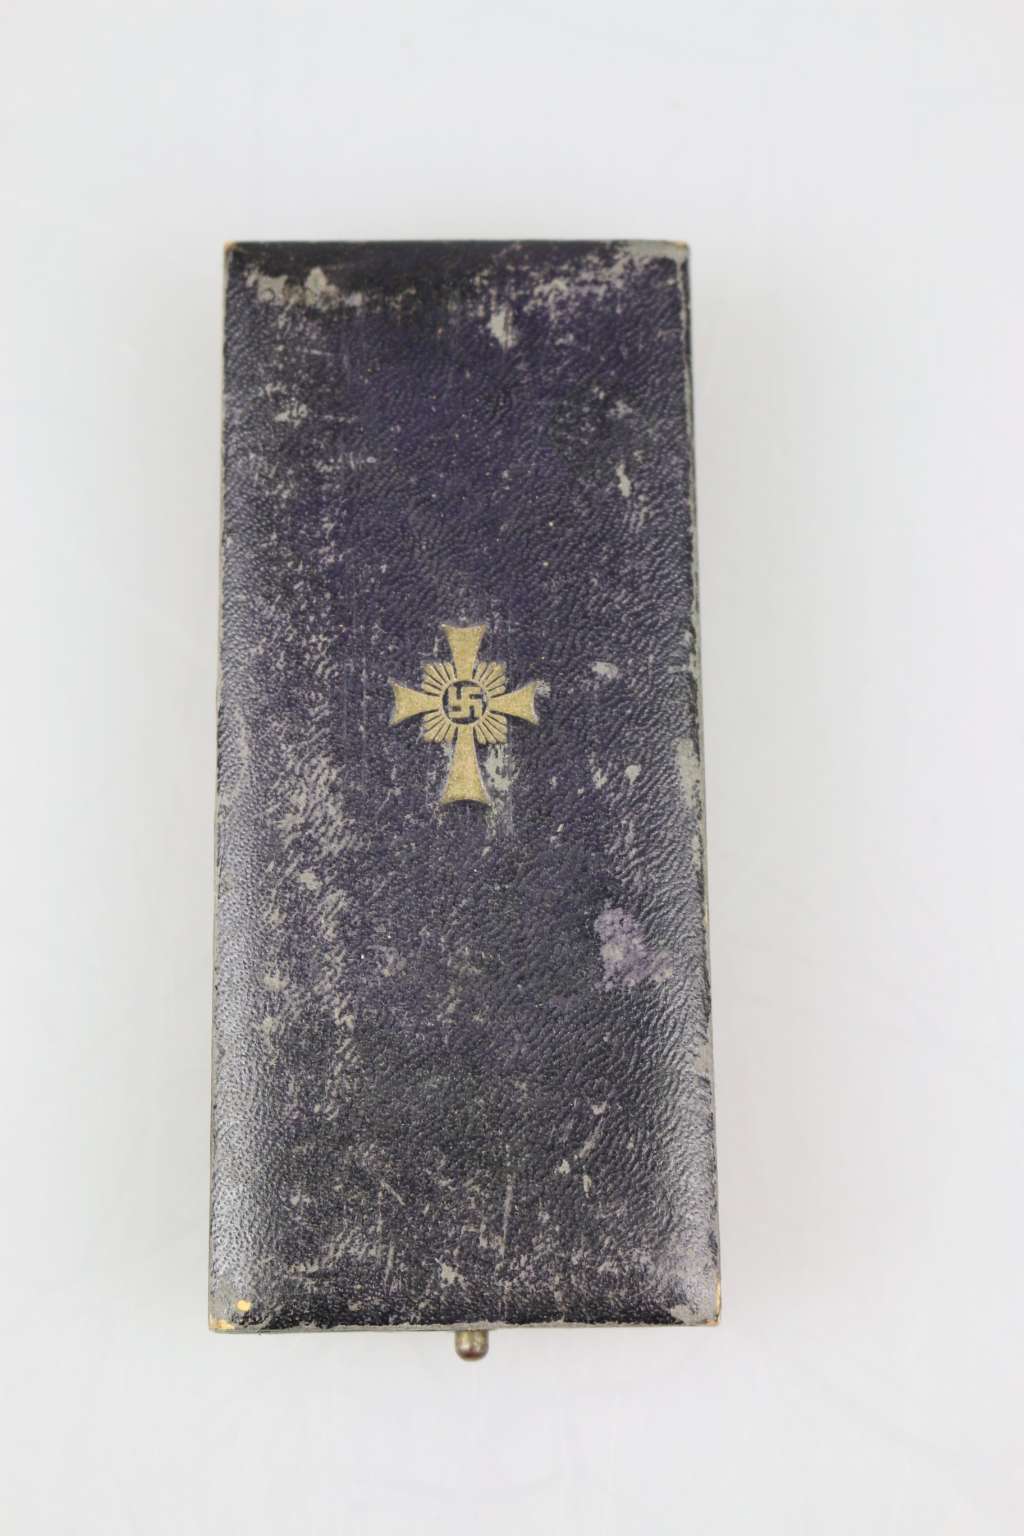 Mutterkreuz in Gold und Silber - Image 3 of 3